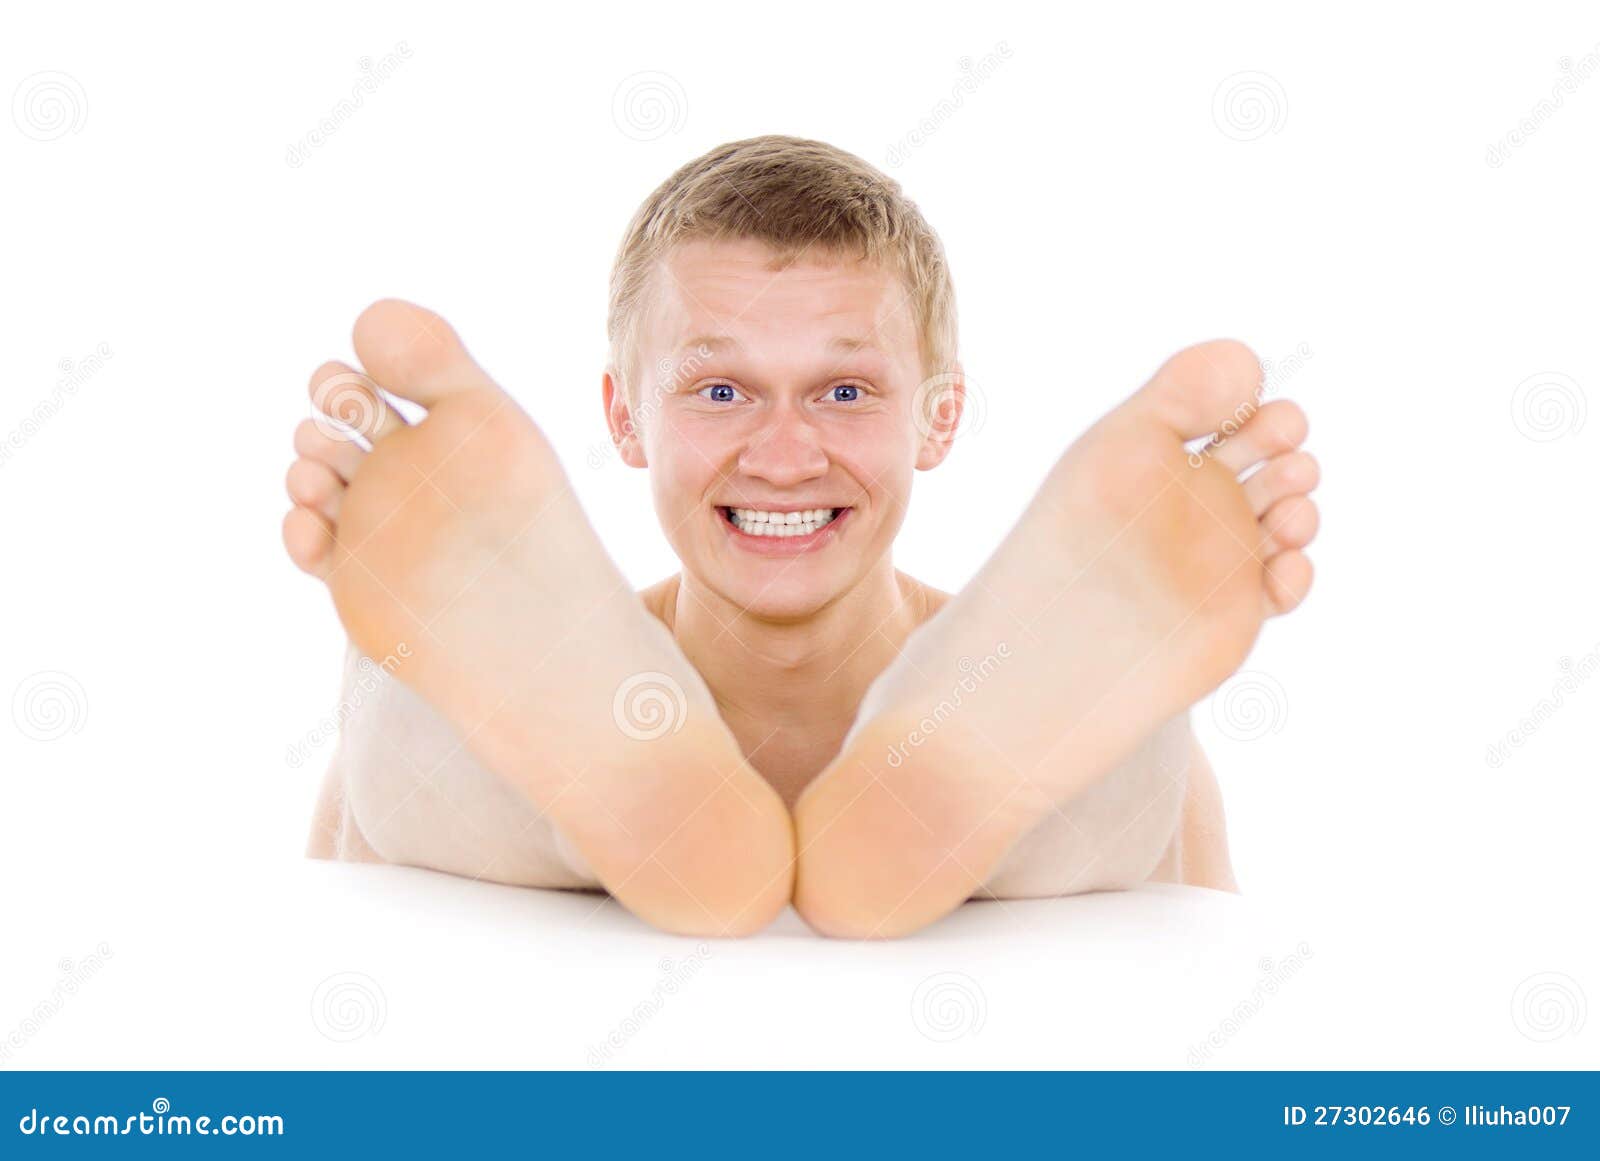 Ноги молодого мужчины